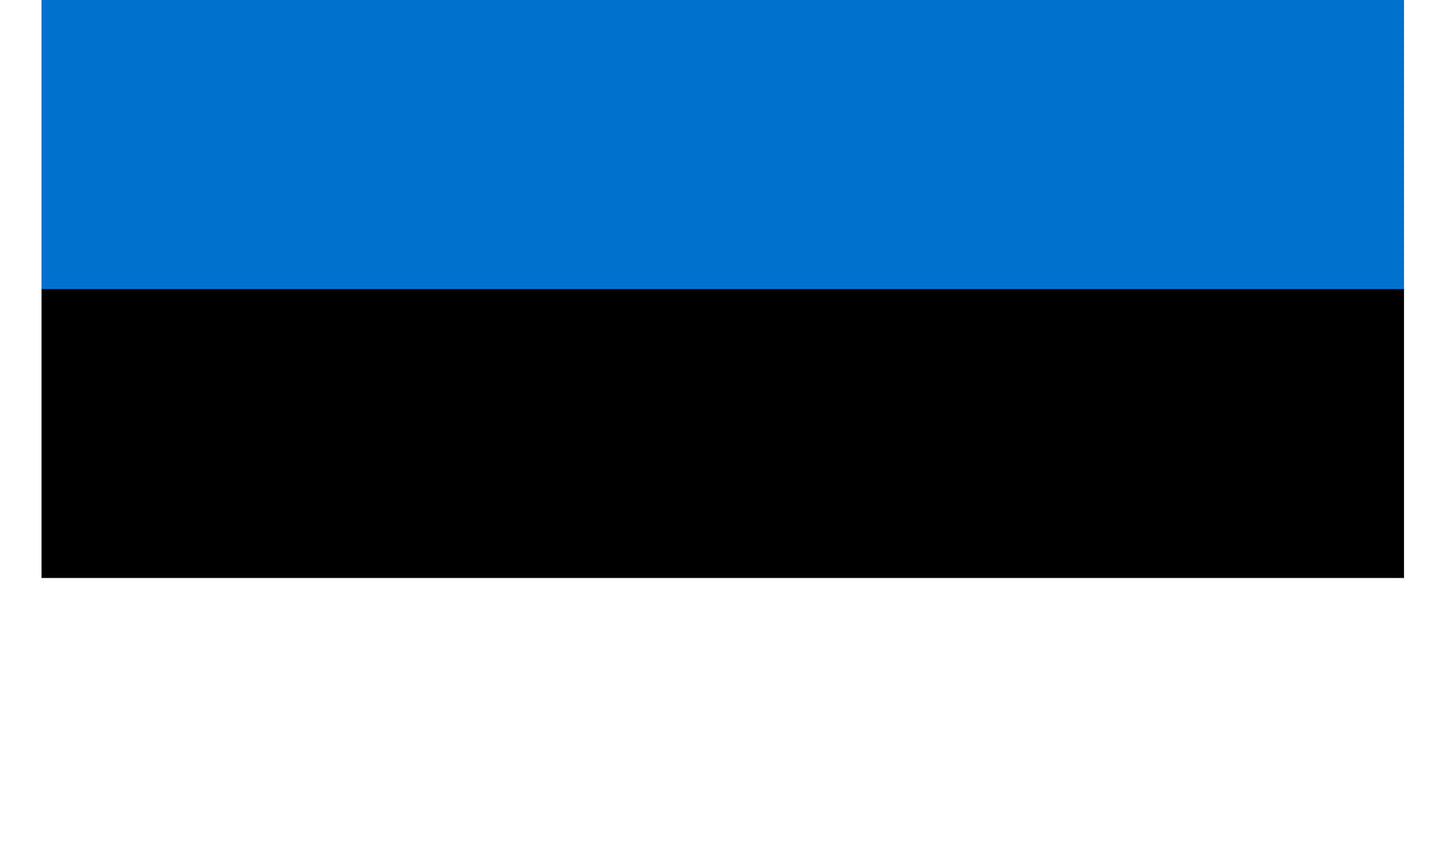 INR-EST-15x22-2 - государственный флаг Эстонии, размер: 15х22 см, материал: атлас. Печать с двух сторон. Подставка и шток приобретаются отдельно